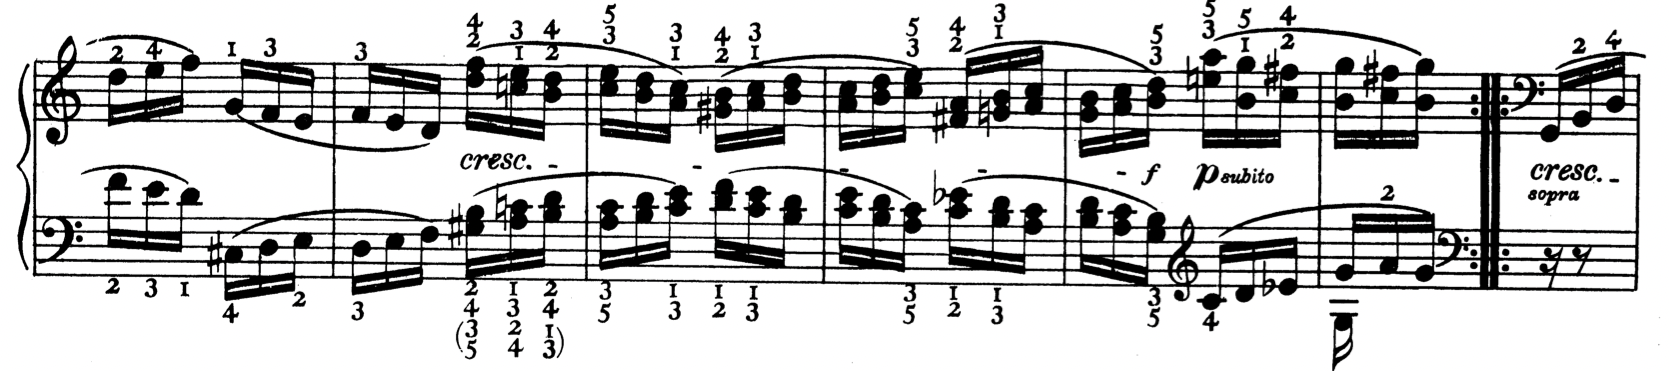 Schnabel Beethoven op 120.26.png